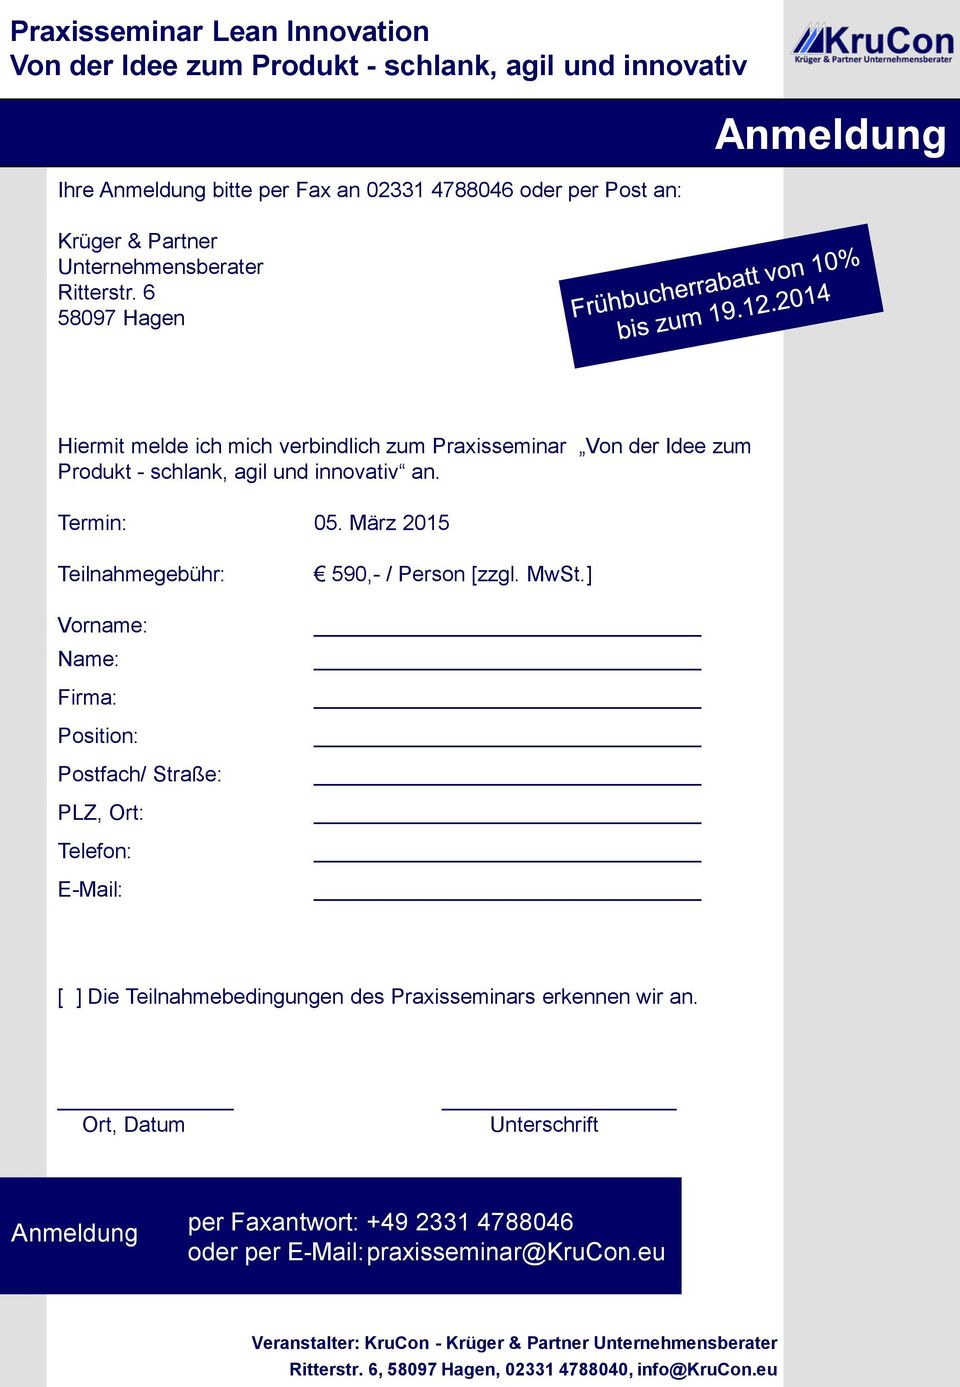 März 2015 Teilnahmegebühr: Vorname: Name: Firma: Position: Postfach/ Straße: PLZ, Ort: Telefon: E-Mail: 590,- / Person [zzgl. MwSt.